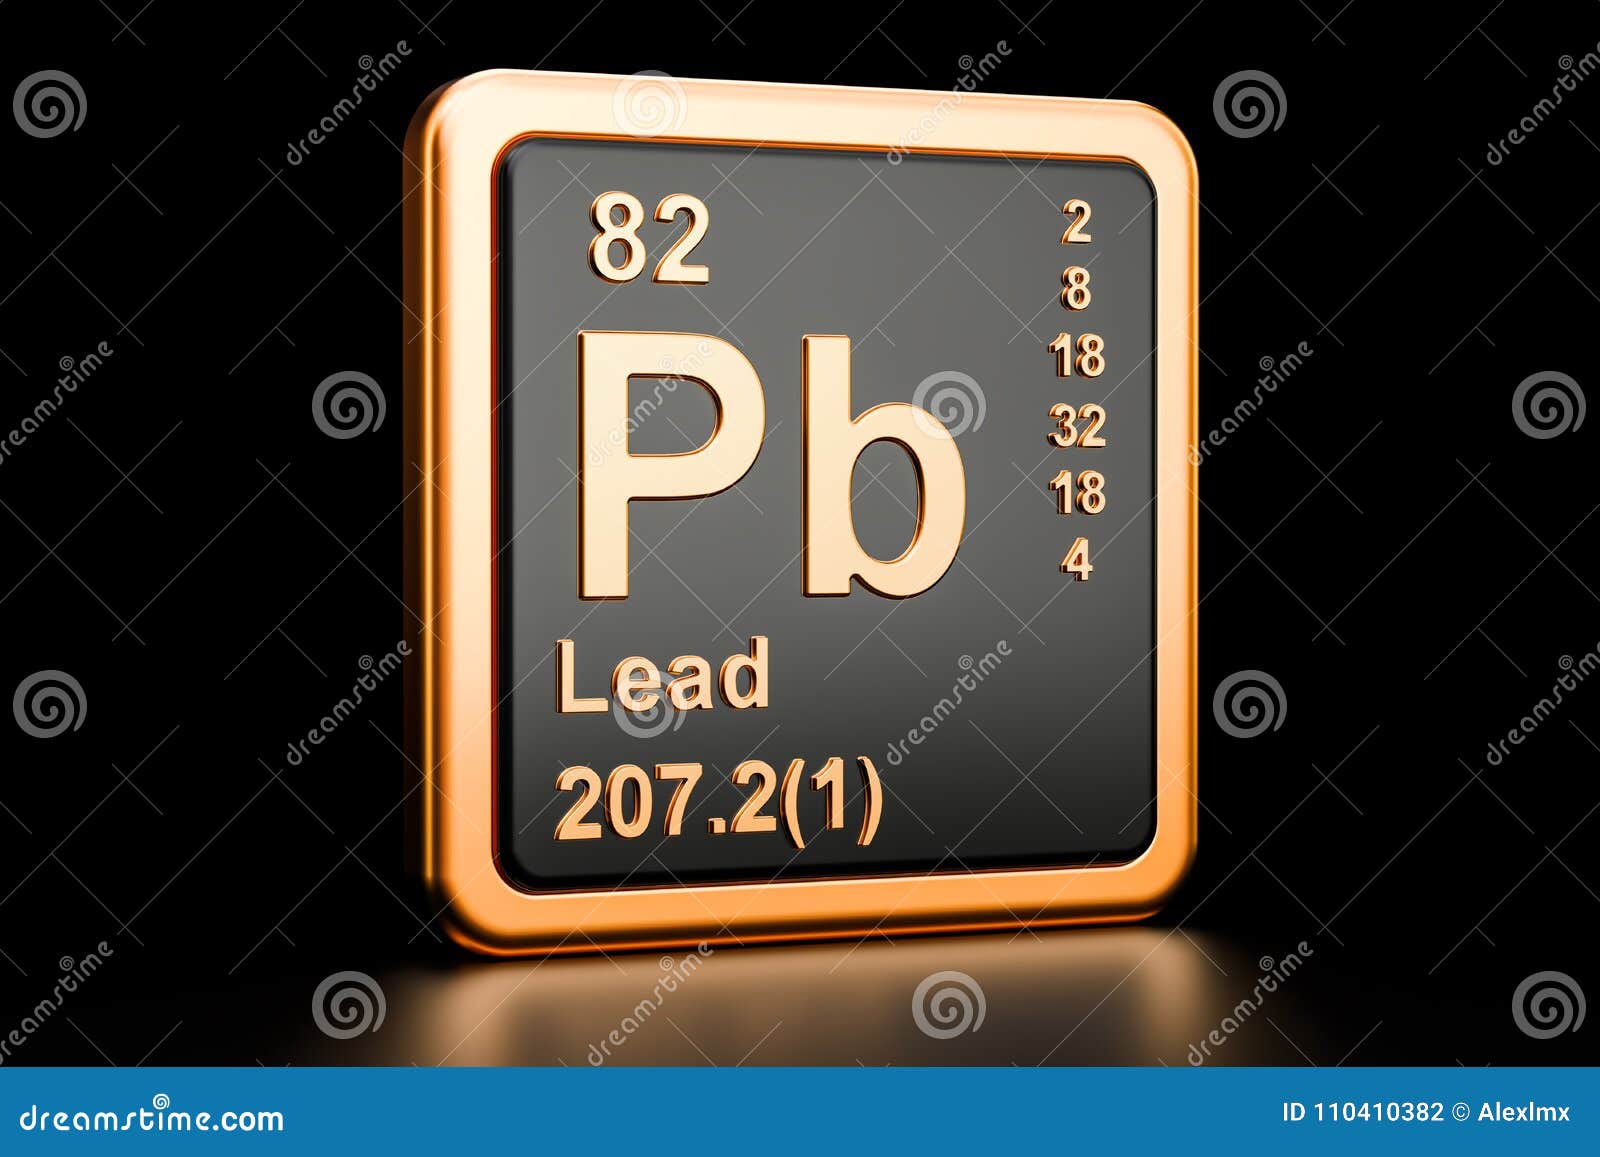 lead plumbum pb chemical . 3d rendering